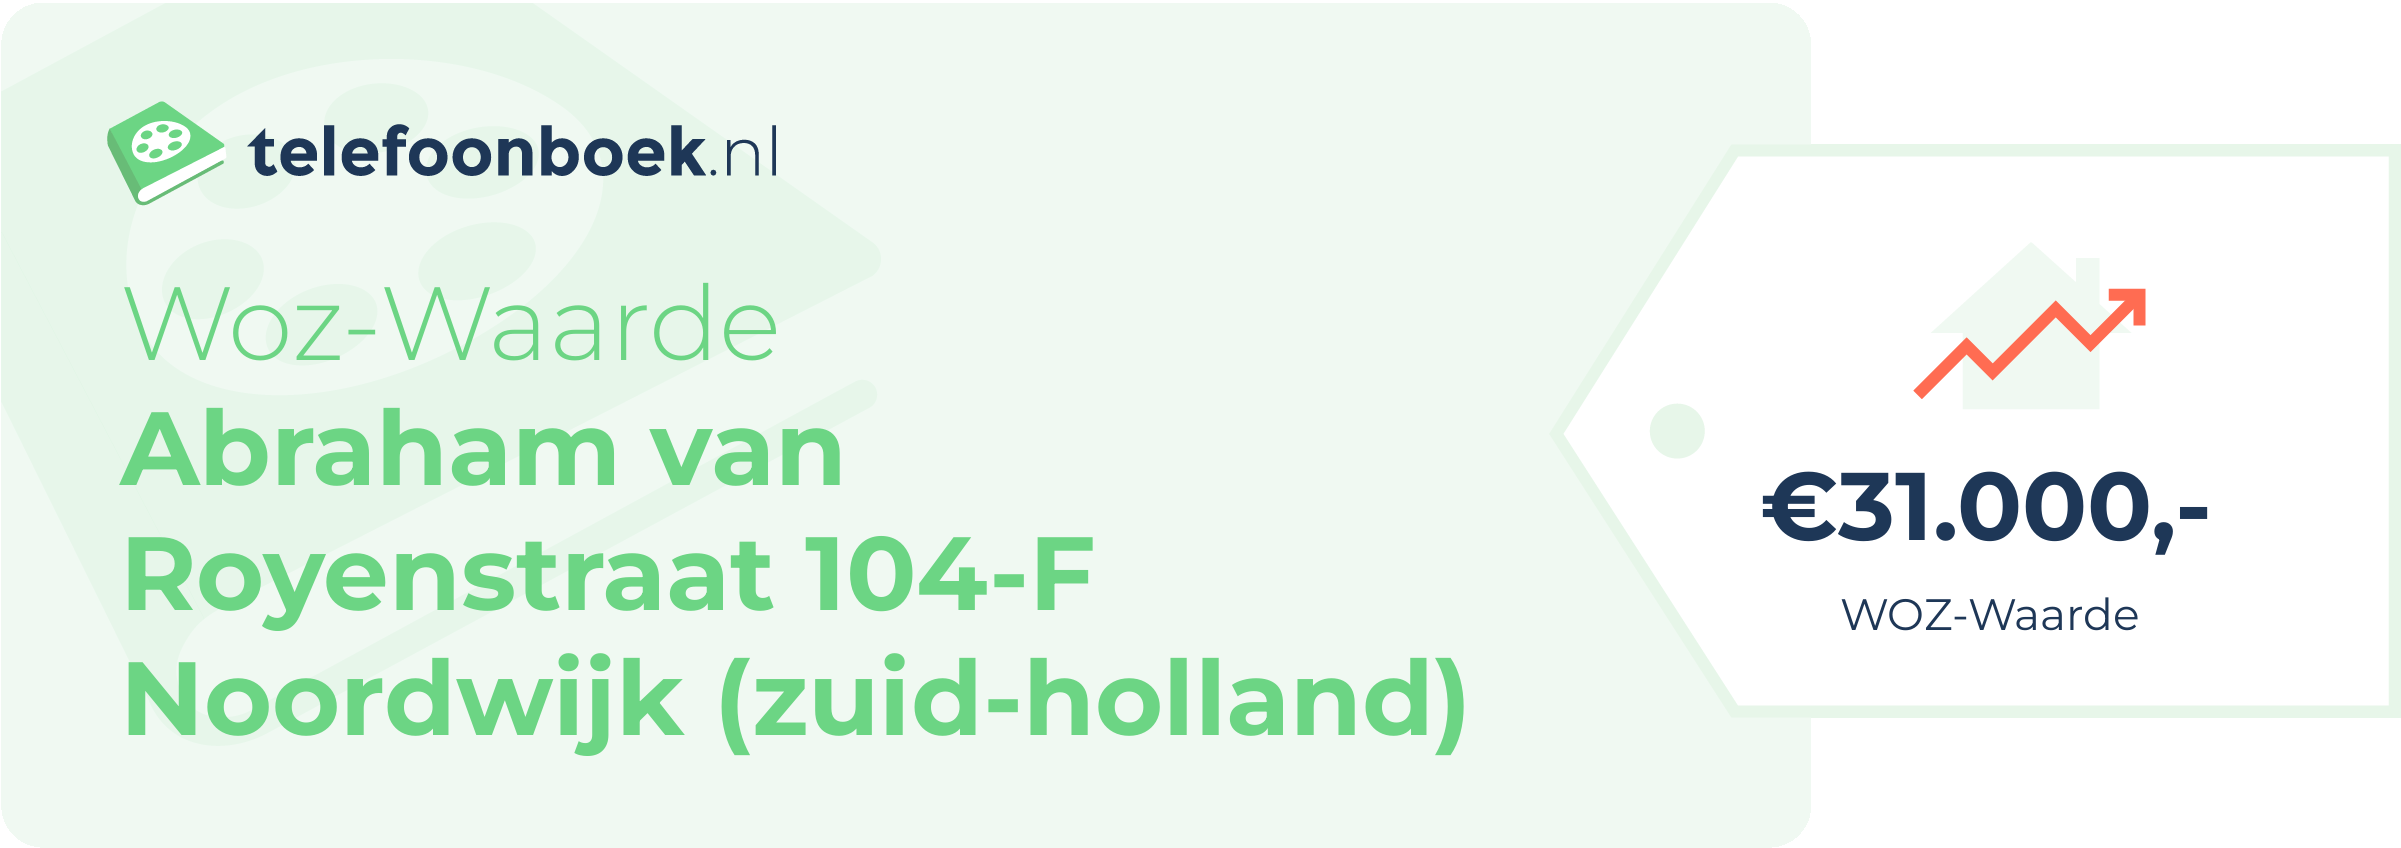 WOZ-waarde Abraham Van Royenstraat 104-F Noordwijk (Zuid-Holland)